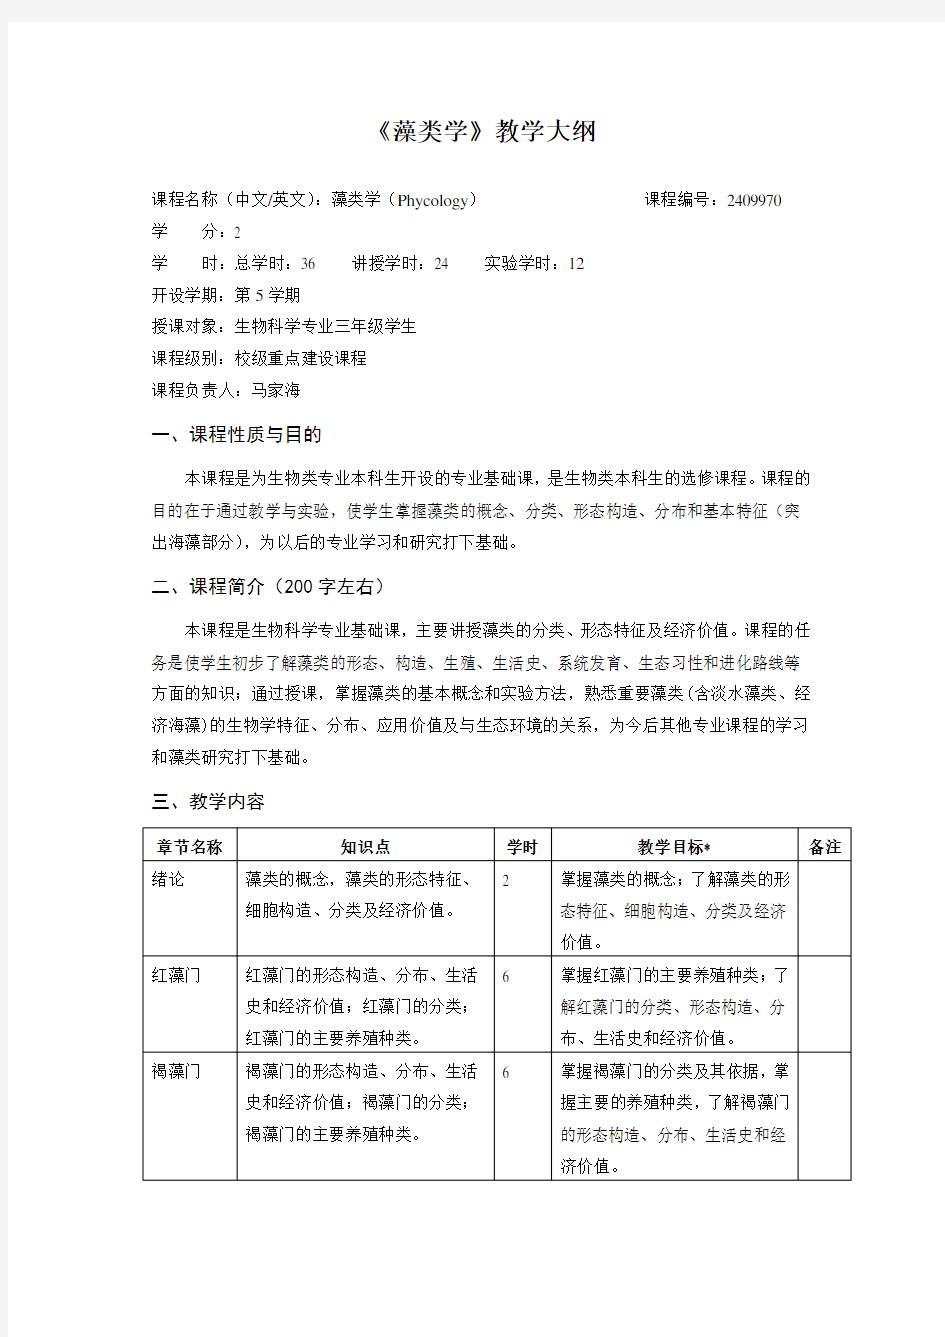 藻类学课程教学大纲上海水产大学(精)